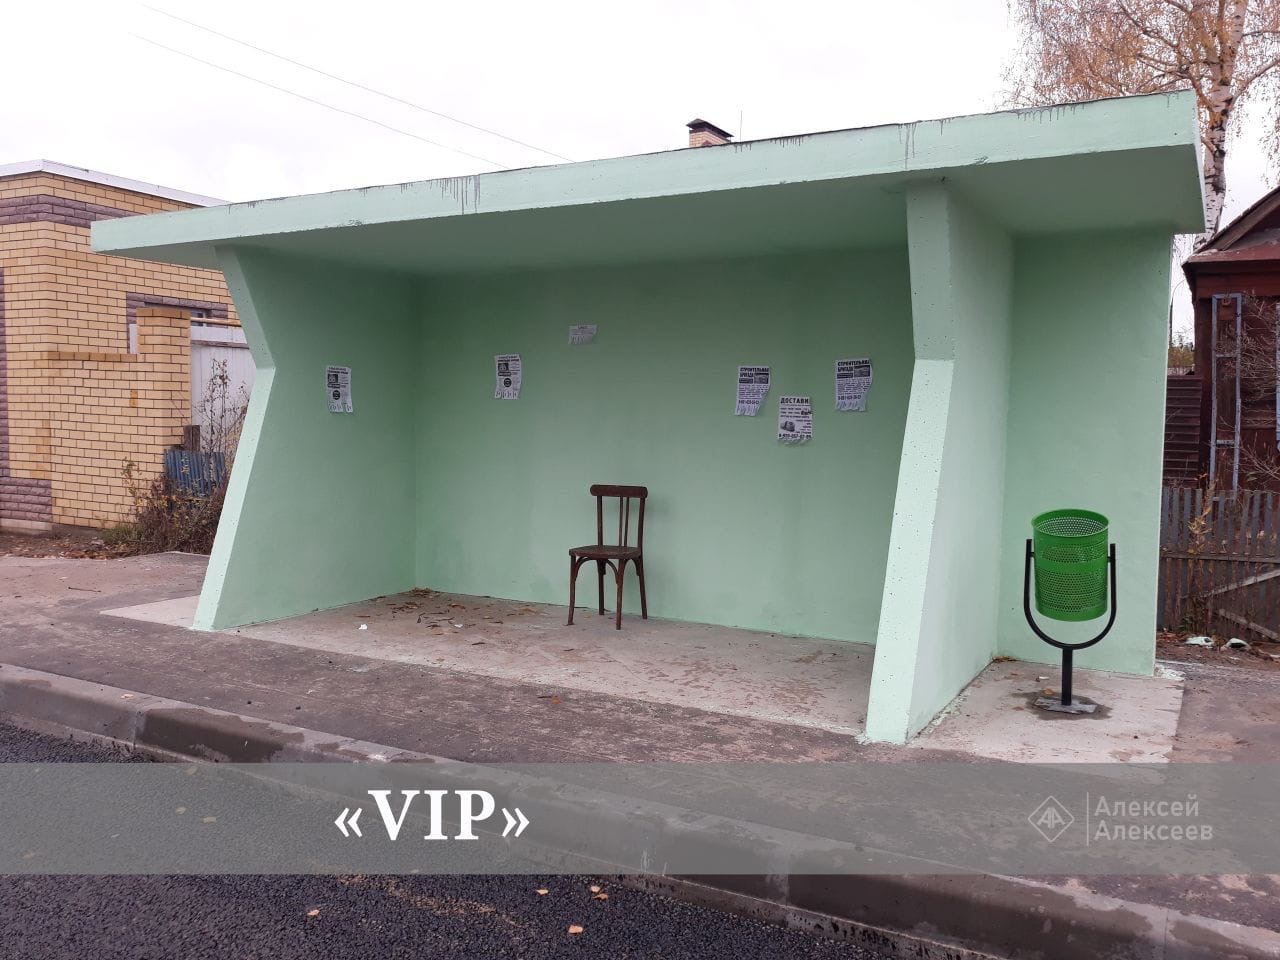 "VIP" , "Комфорт", "Эконом" - шуточный рейтинг остановок в Дзержинске